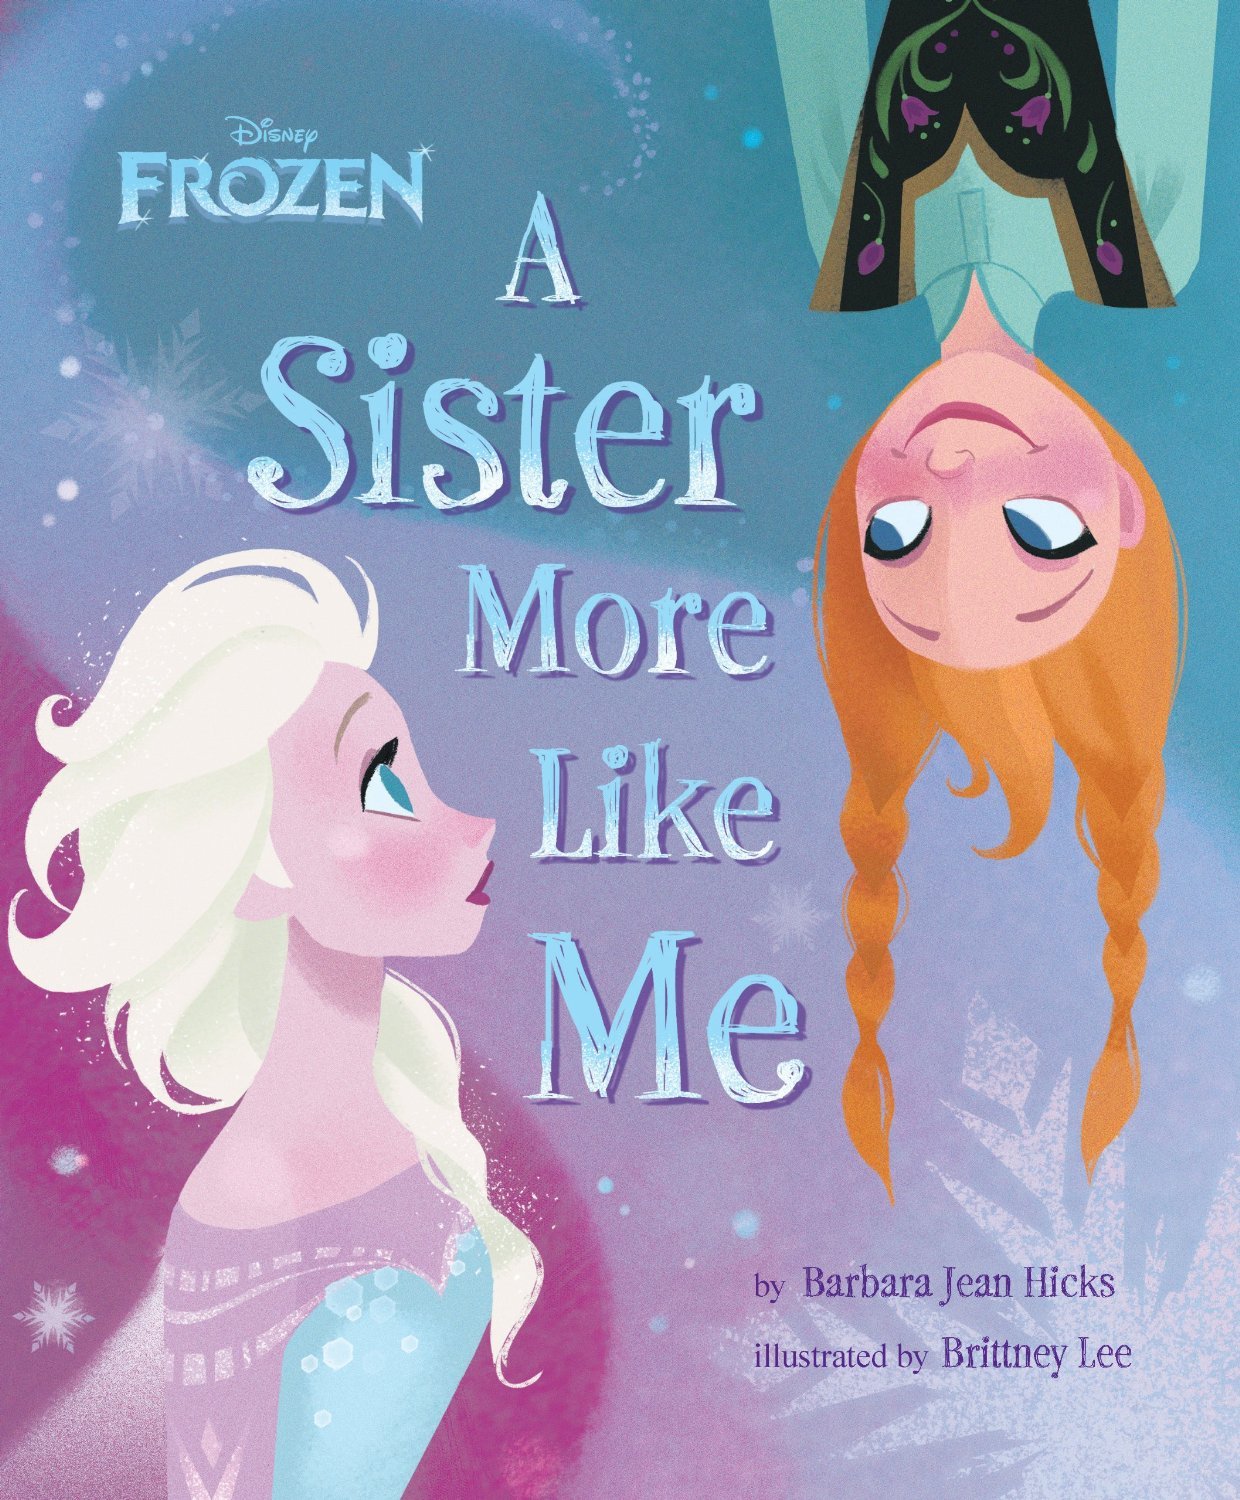 Disney Noticias Mexico: Más portadas de libros de Frozen